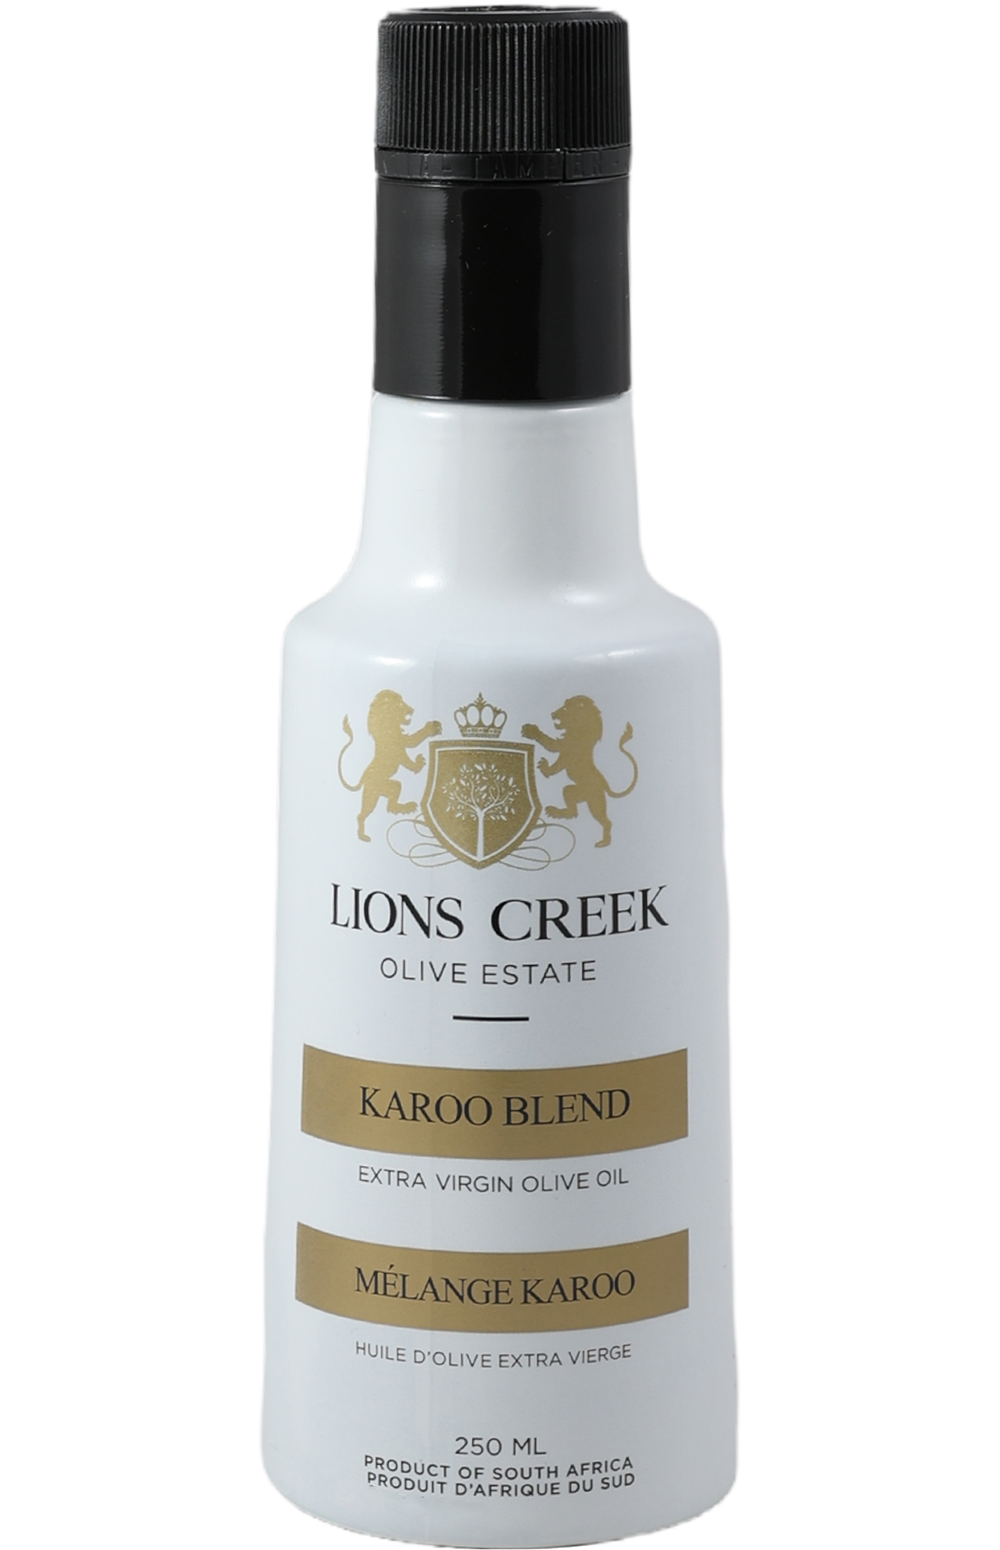 Lions Creek Olive Estate Karoo Blend Extra Virgin Olive Oil